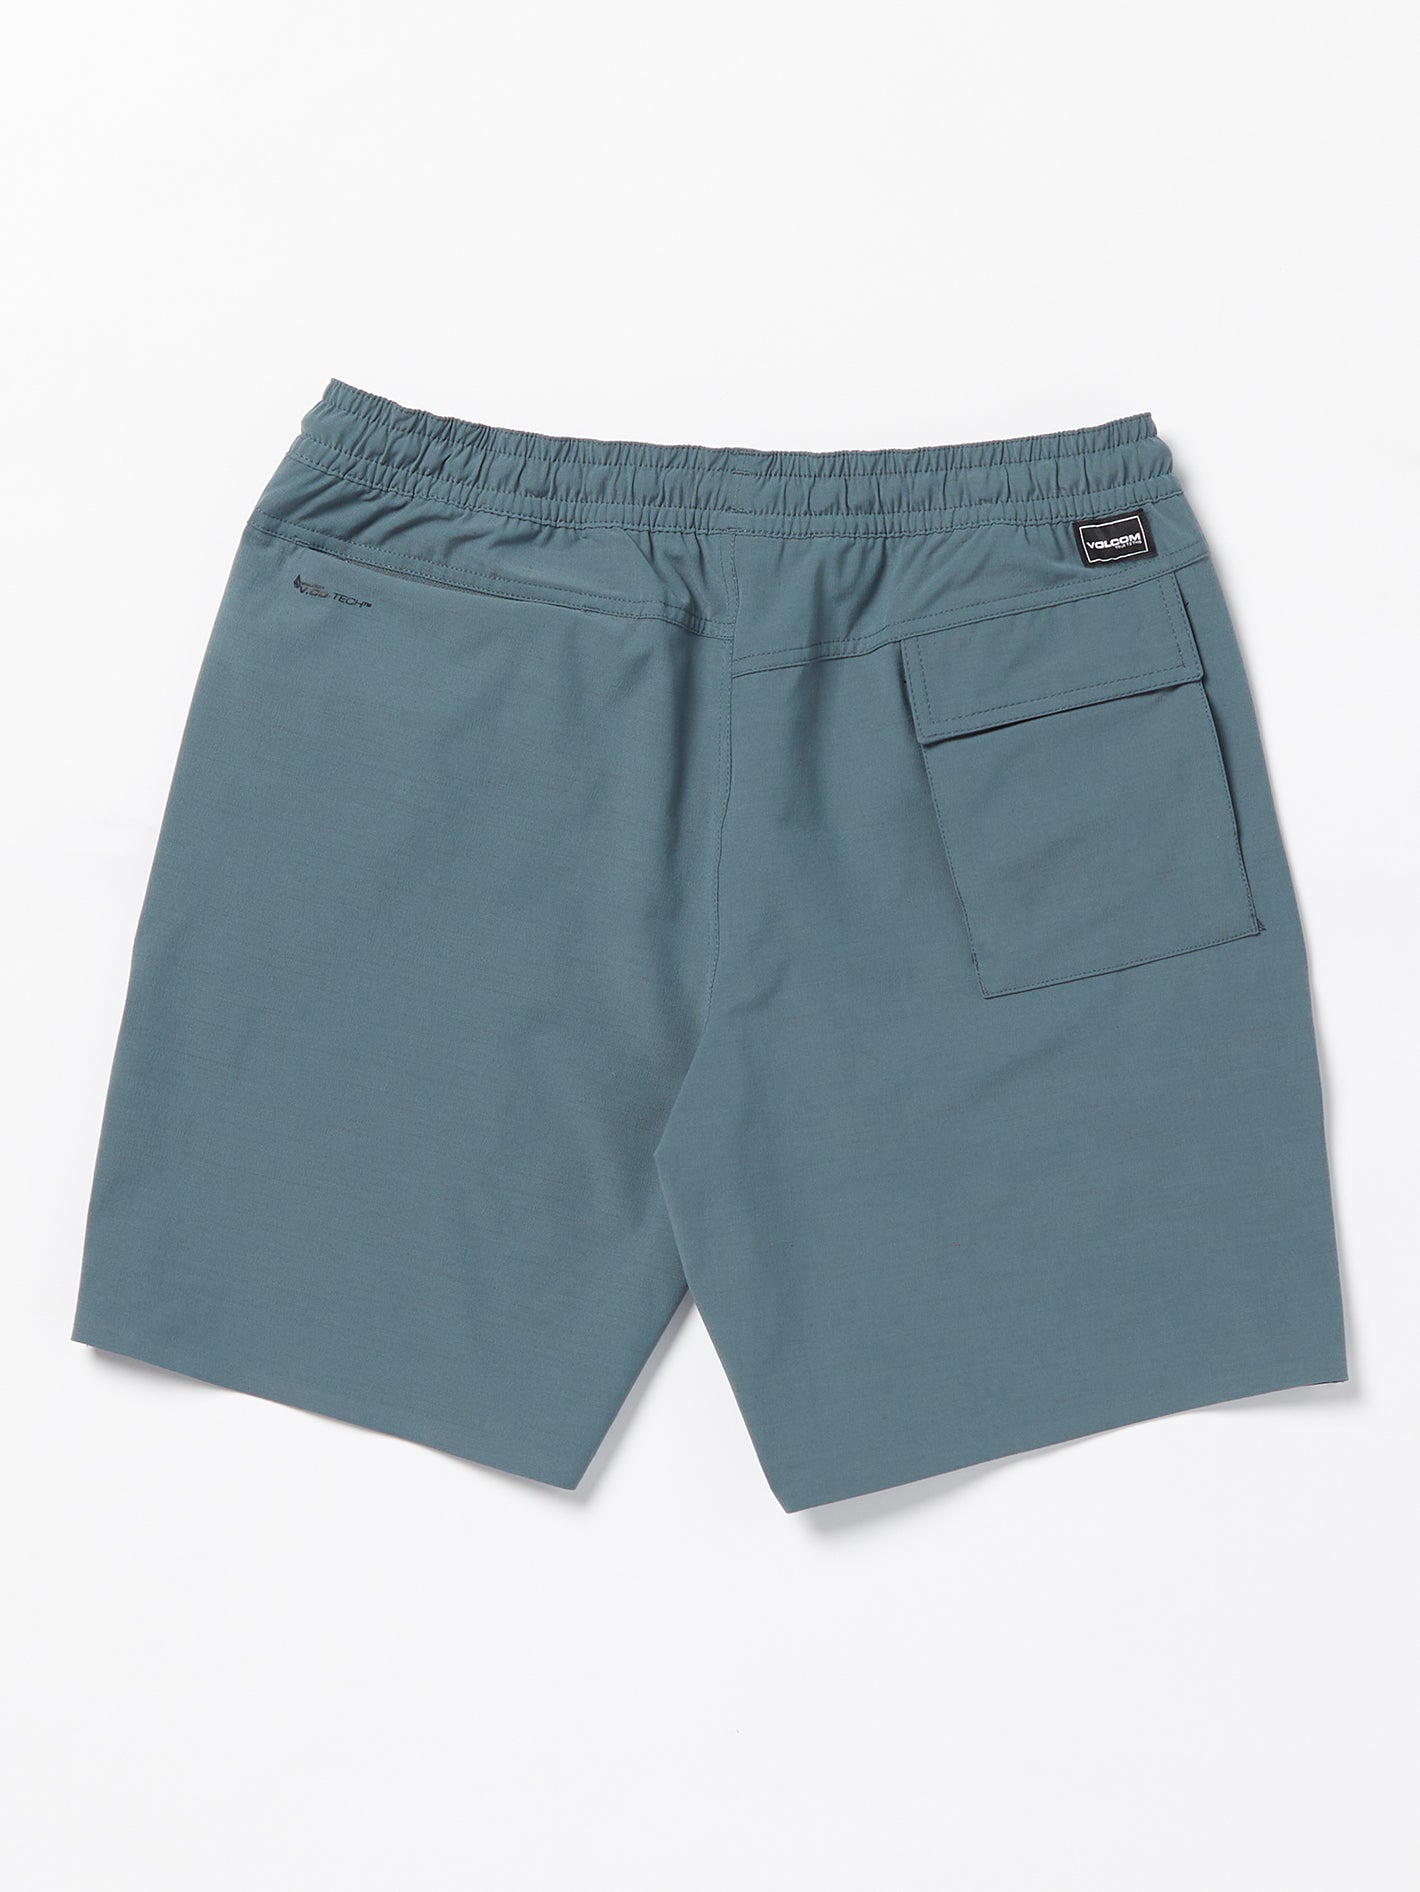 Wrecpack Hybrid Shorts - Dark Slate – Volcom US